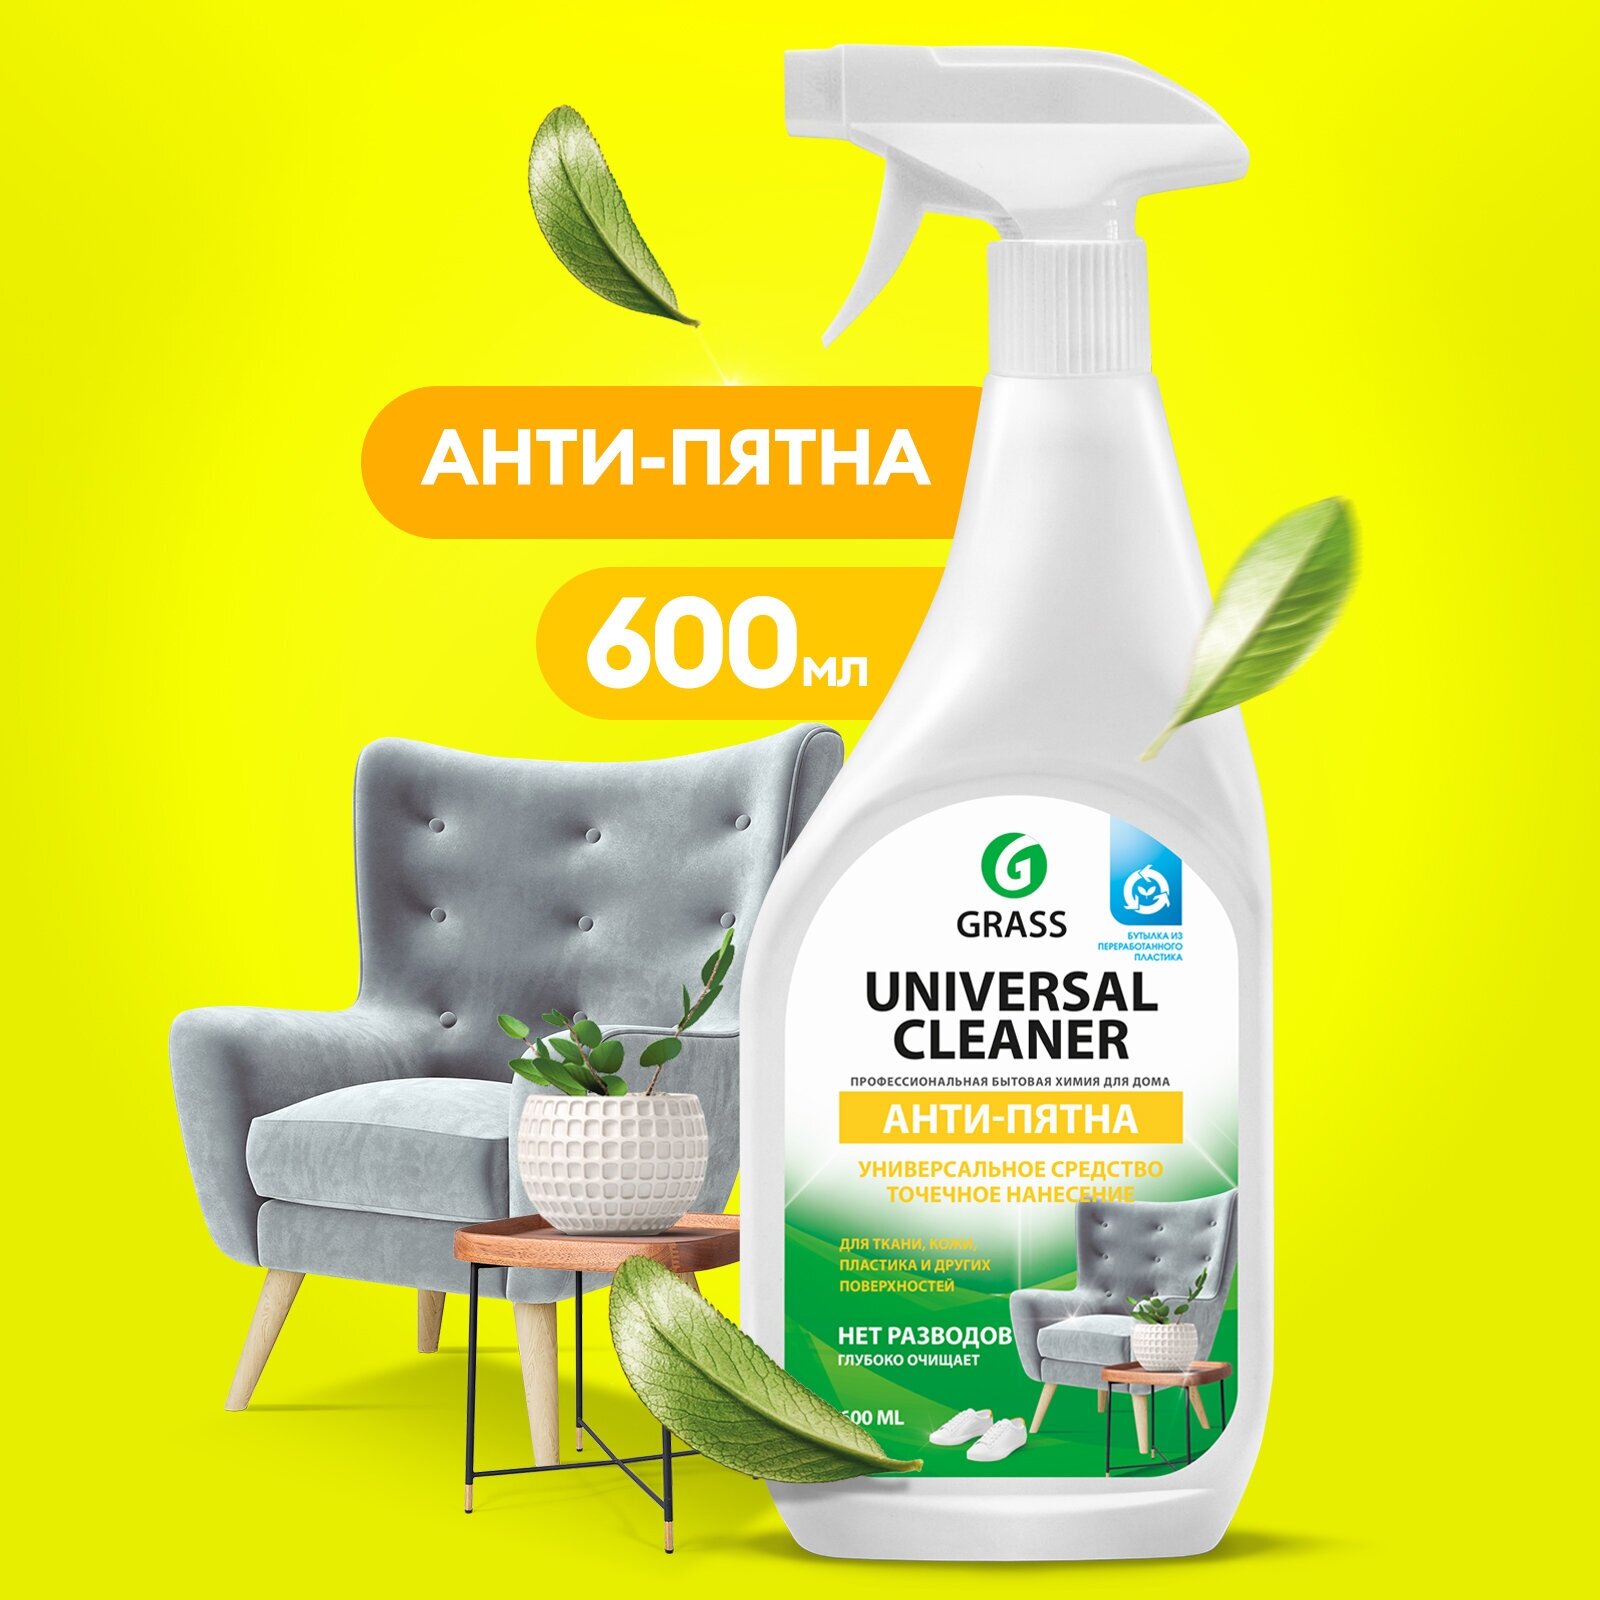 Grass Универсальное чистящее средство Universal cleaner